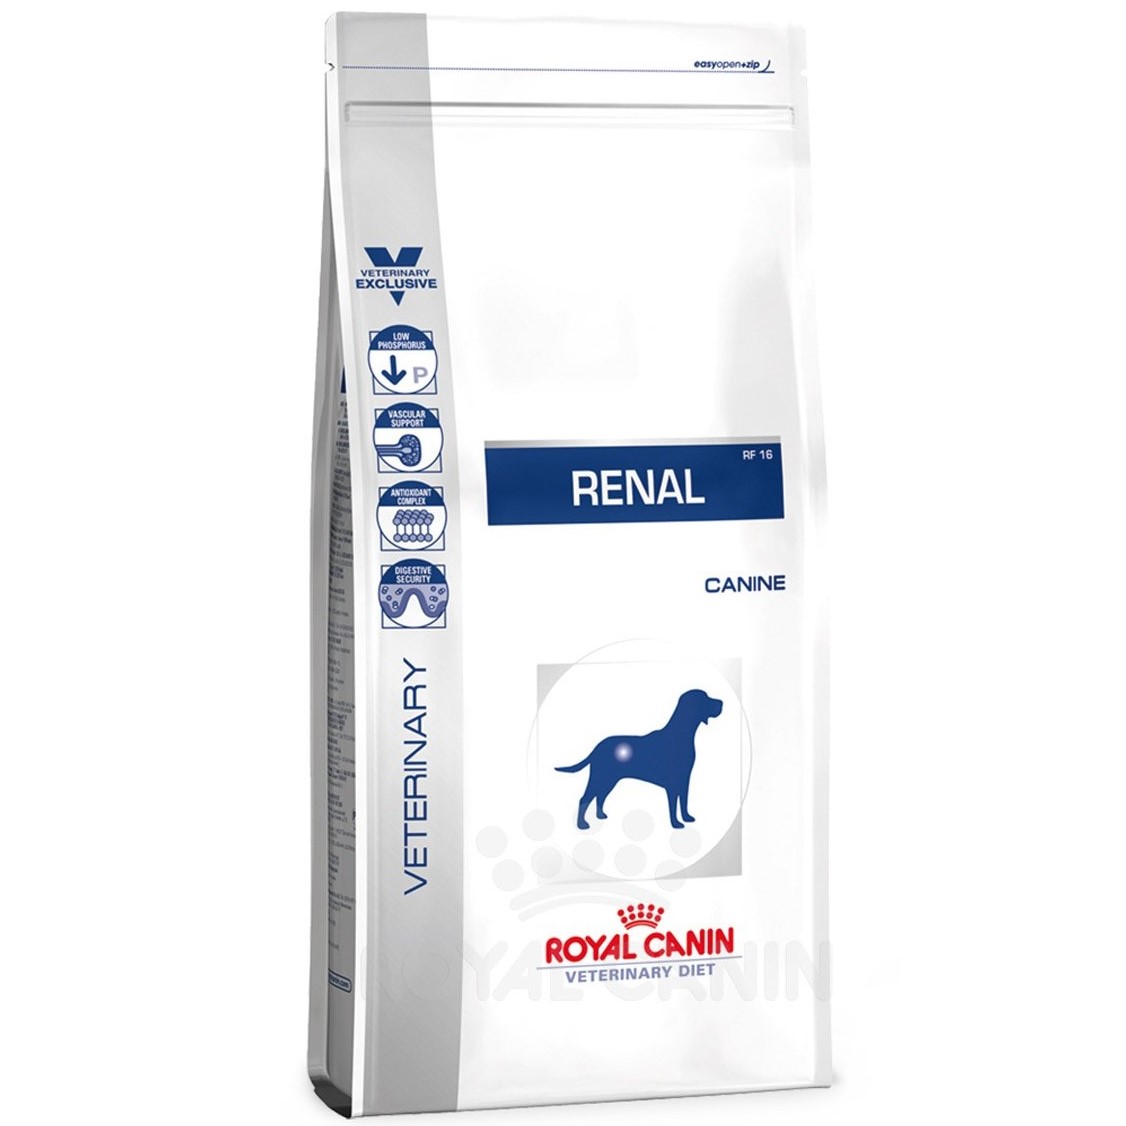 Сухой корм для собак Royal Canin Renal Canine с хронической почечной недостаточностью 2 кг - фото 1